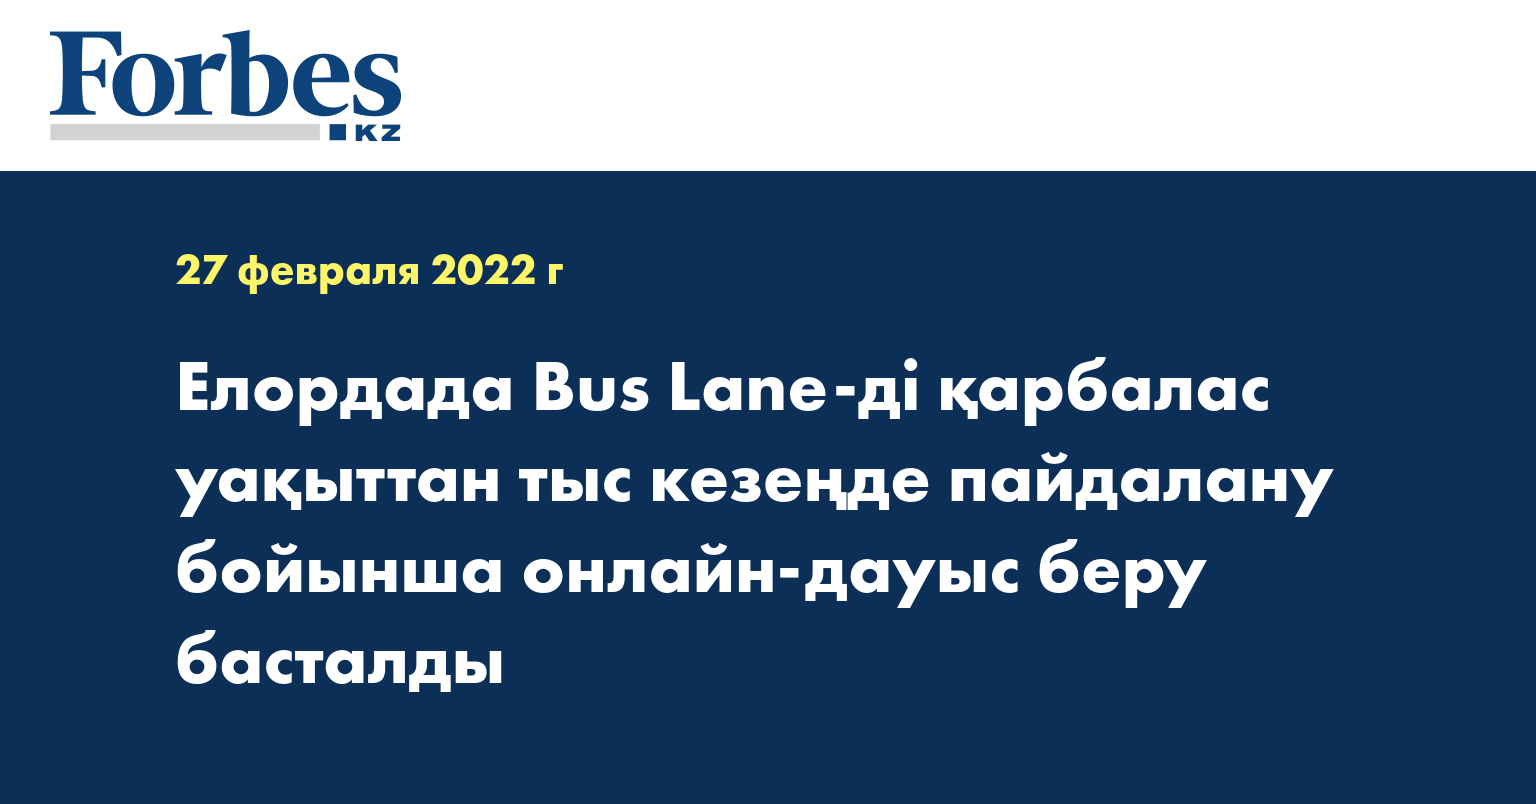 Елордада Bus Lane-ді қарбалас уақыттан тыс кезеңде пайдалану бойынша онлайн-дауыс беру басталды